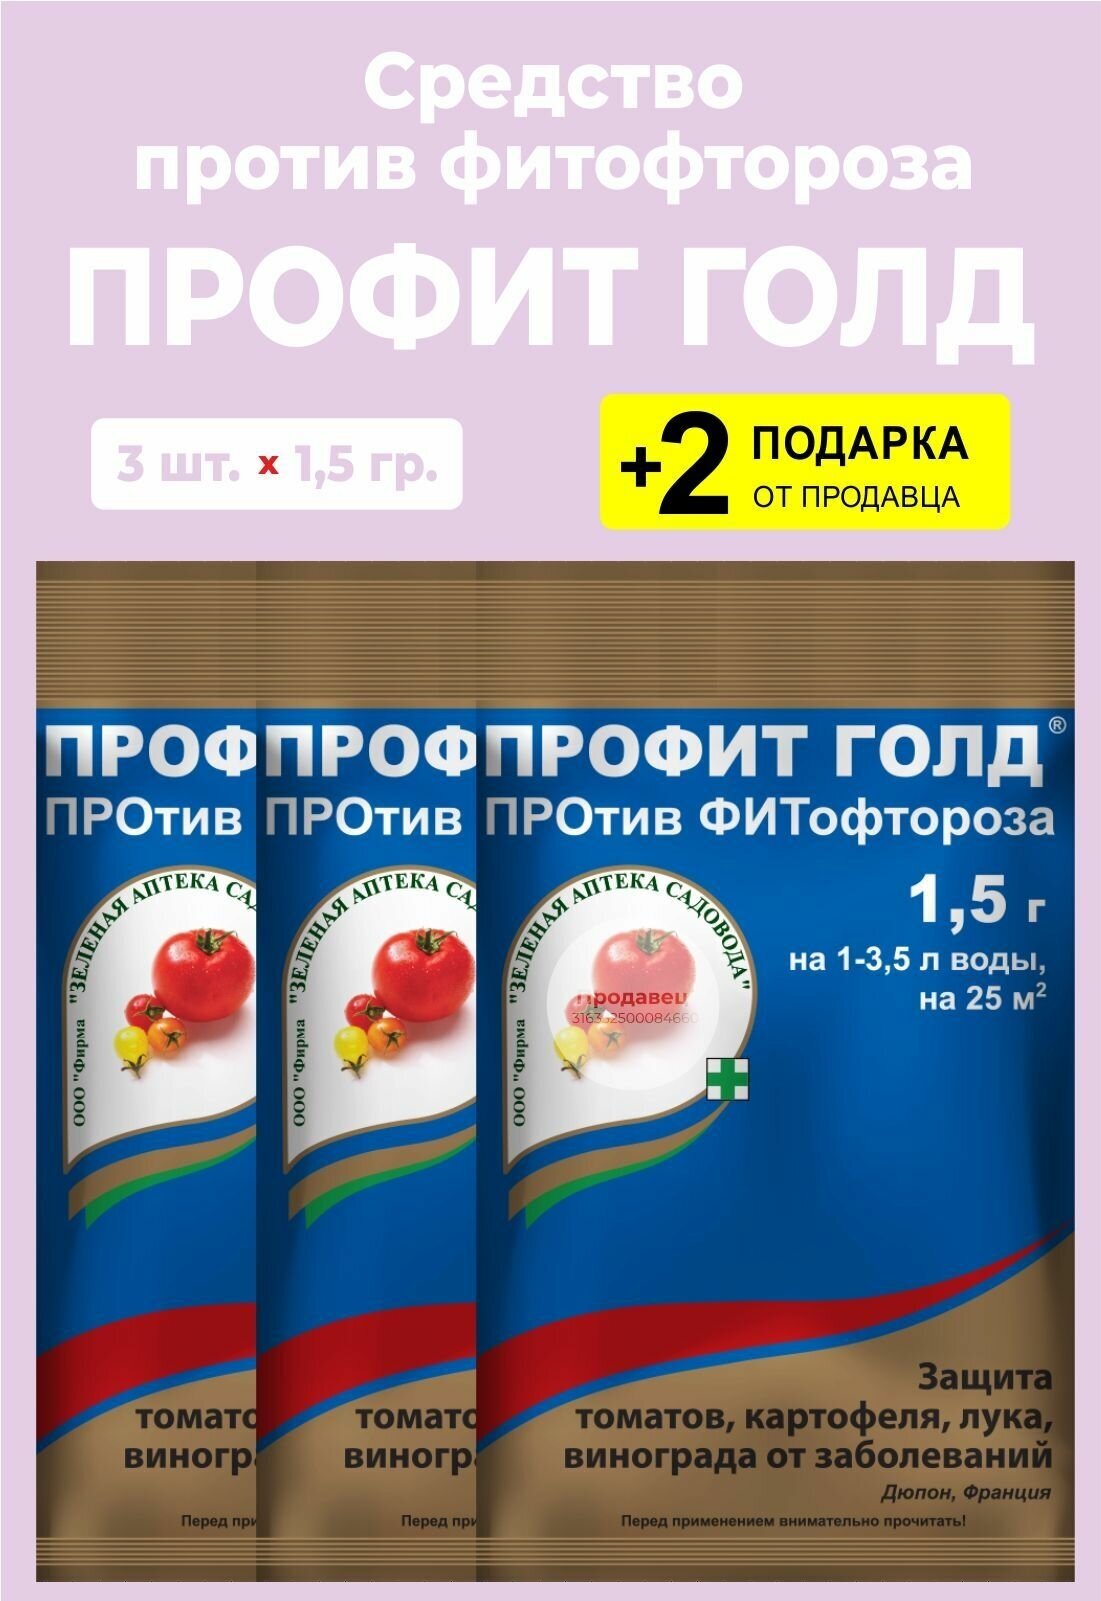 Средство "Профит Голд" от фитофтороза, 1,5 гр., 3 упаковки + 2 Подарка